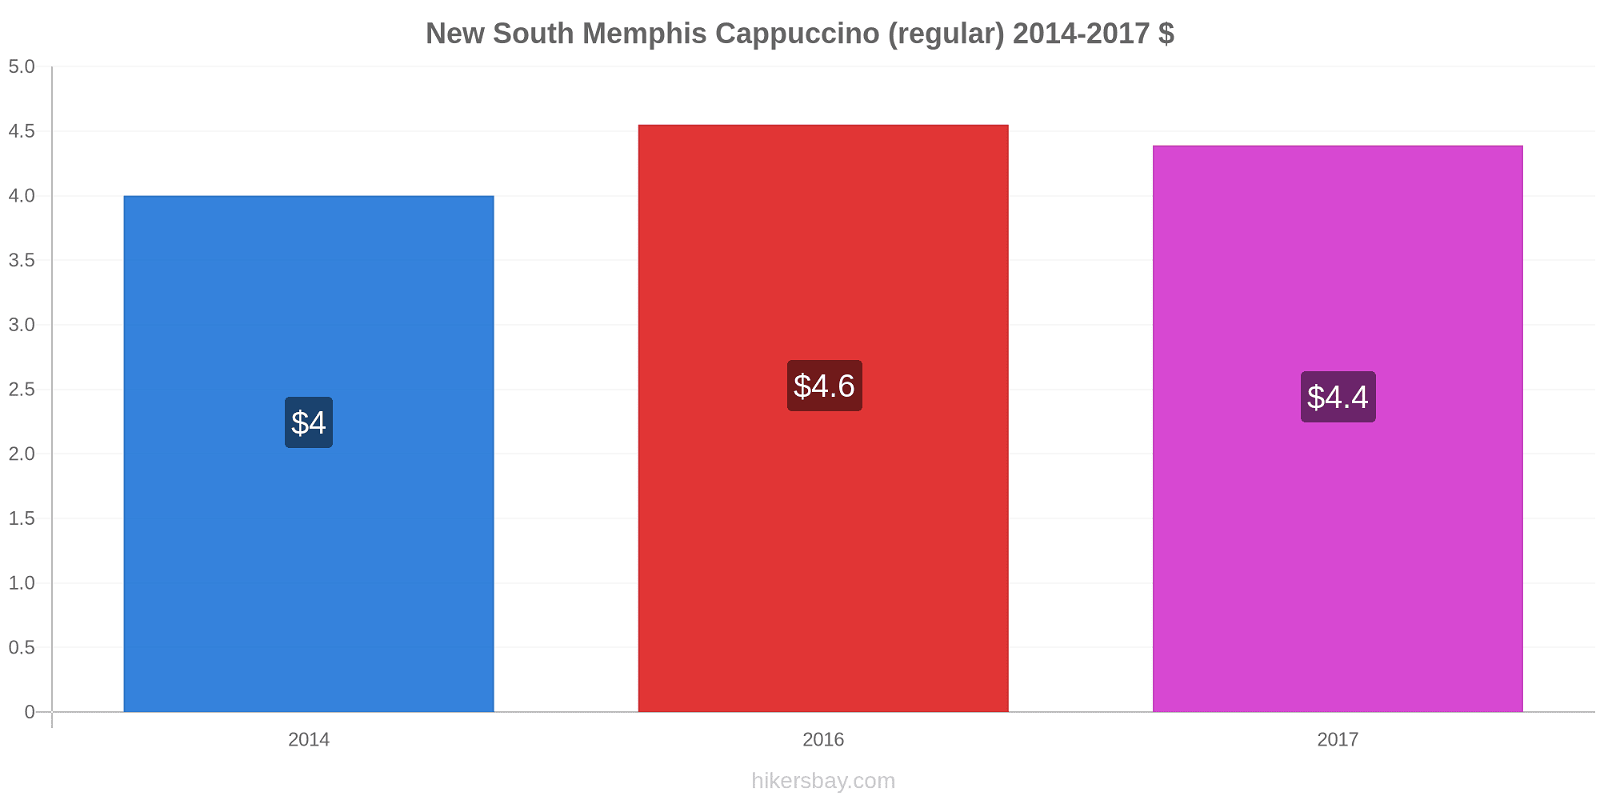 New South Memphis variação de preço Capuccino (regular) hikersbay.com